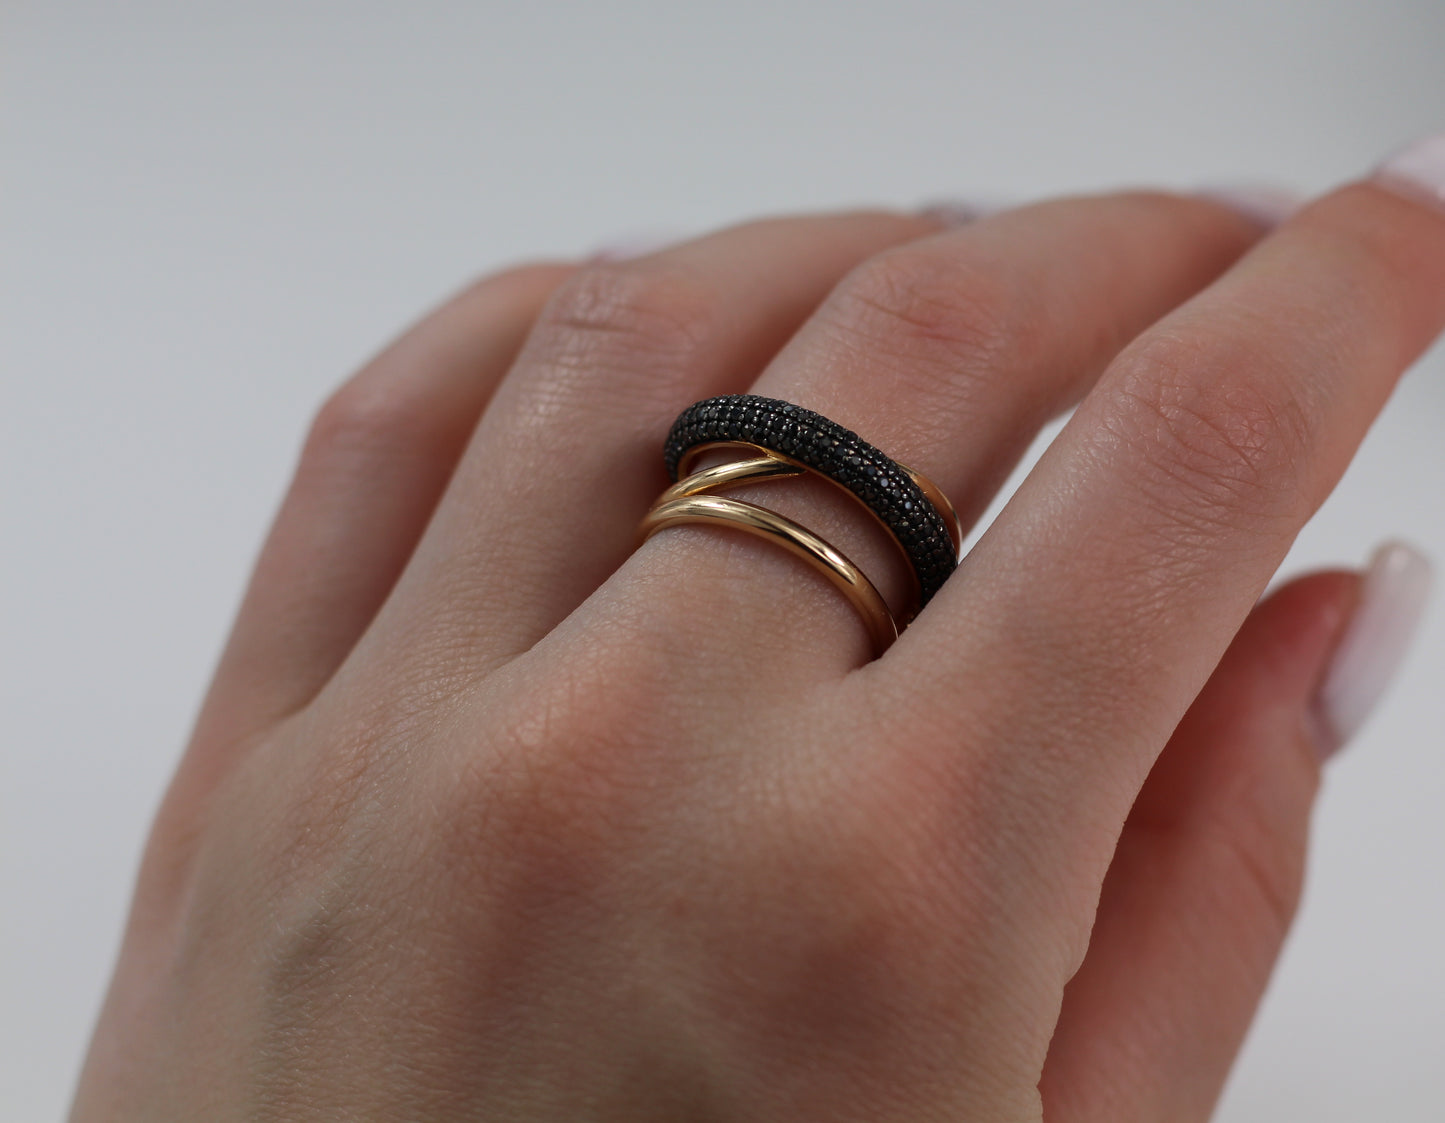 Interwoven Ring with Black Zirconia stones